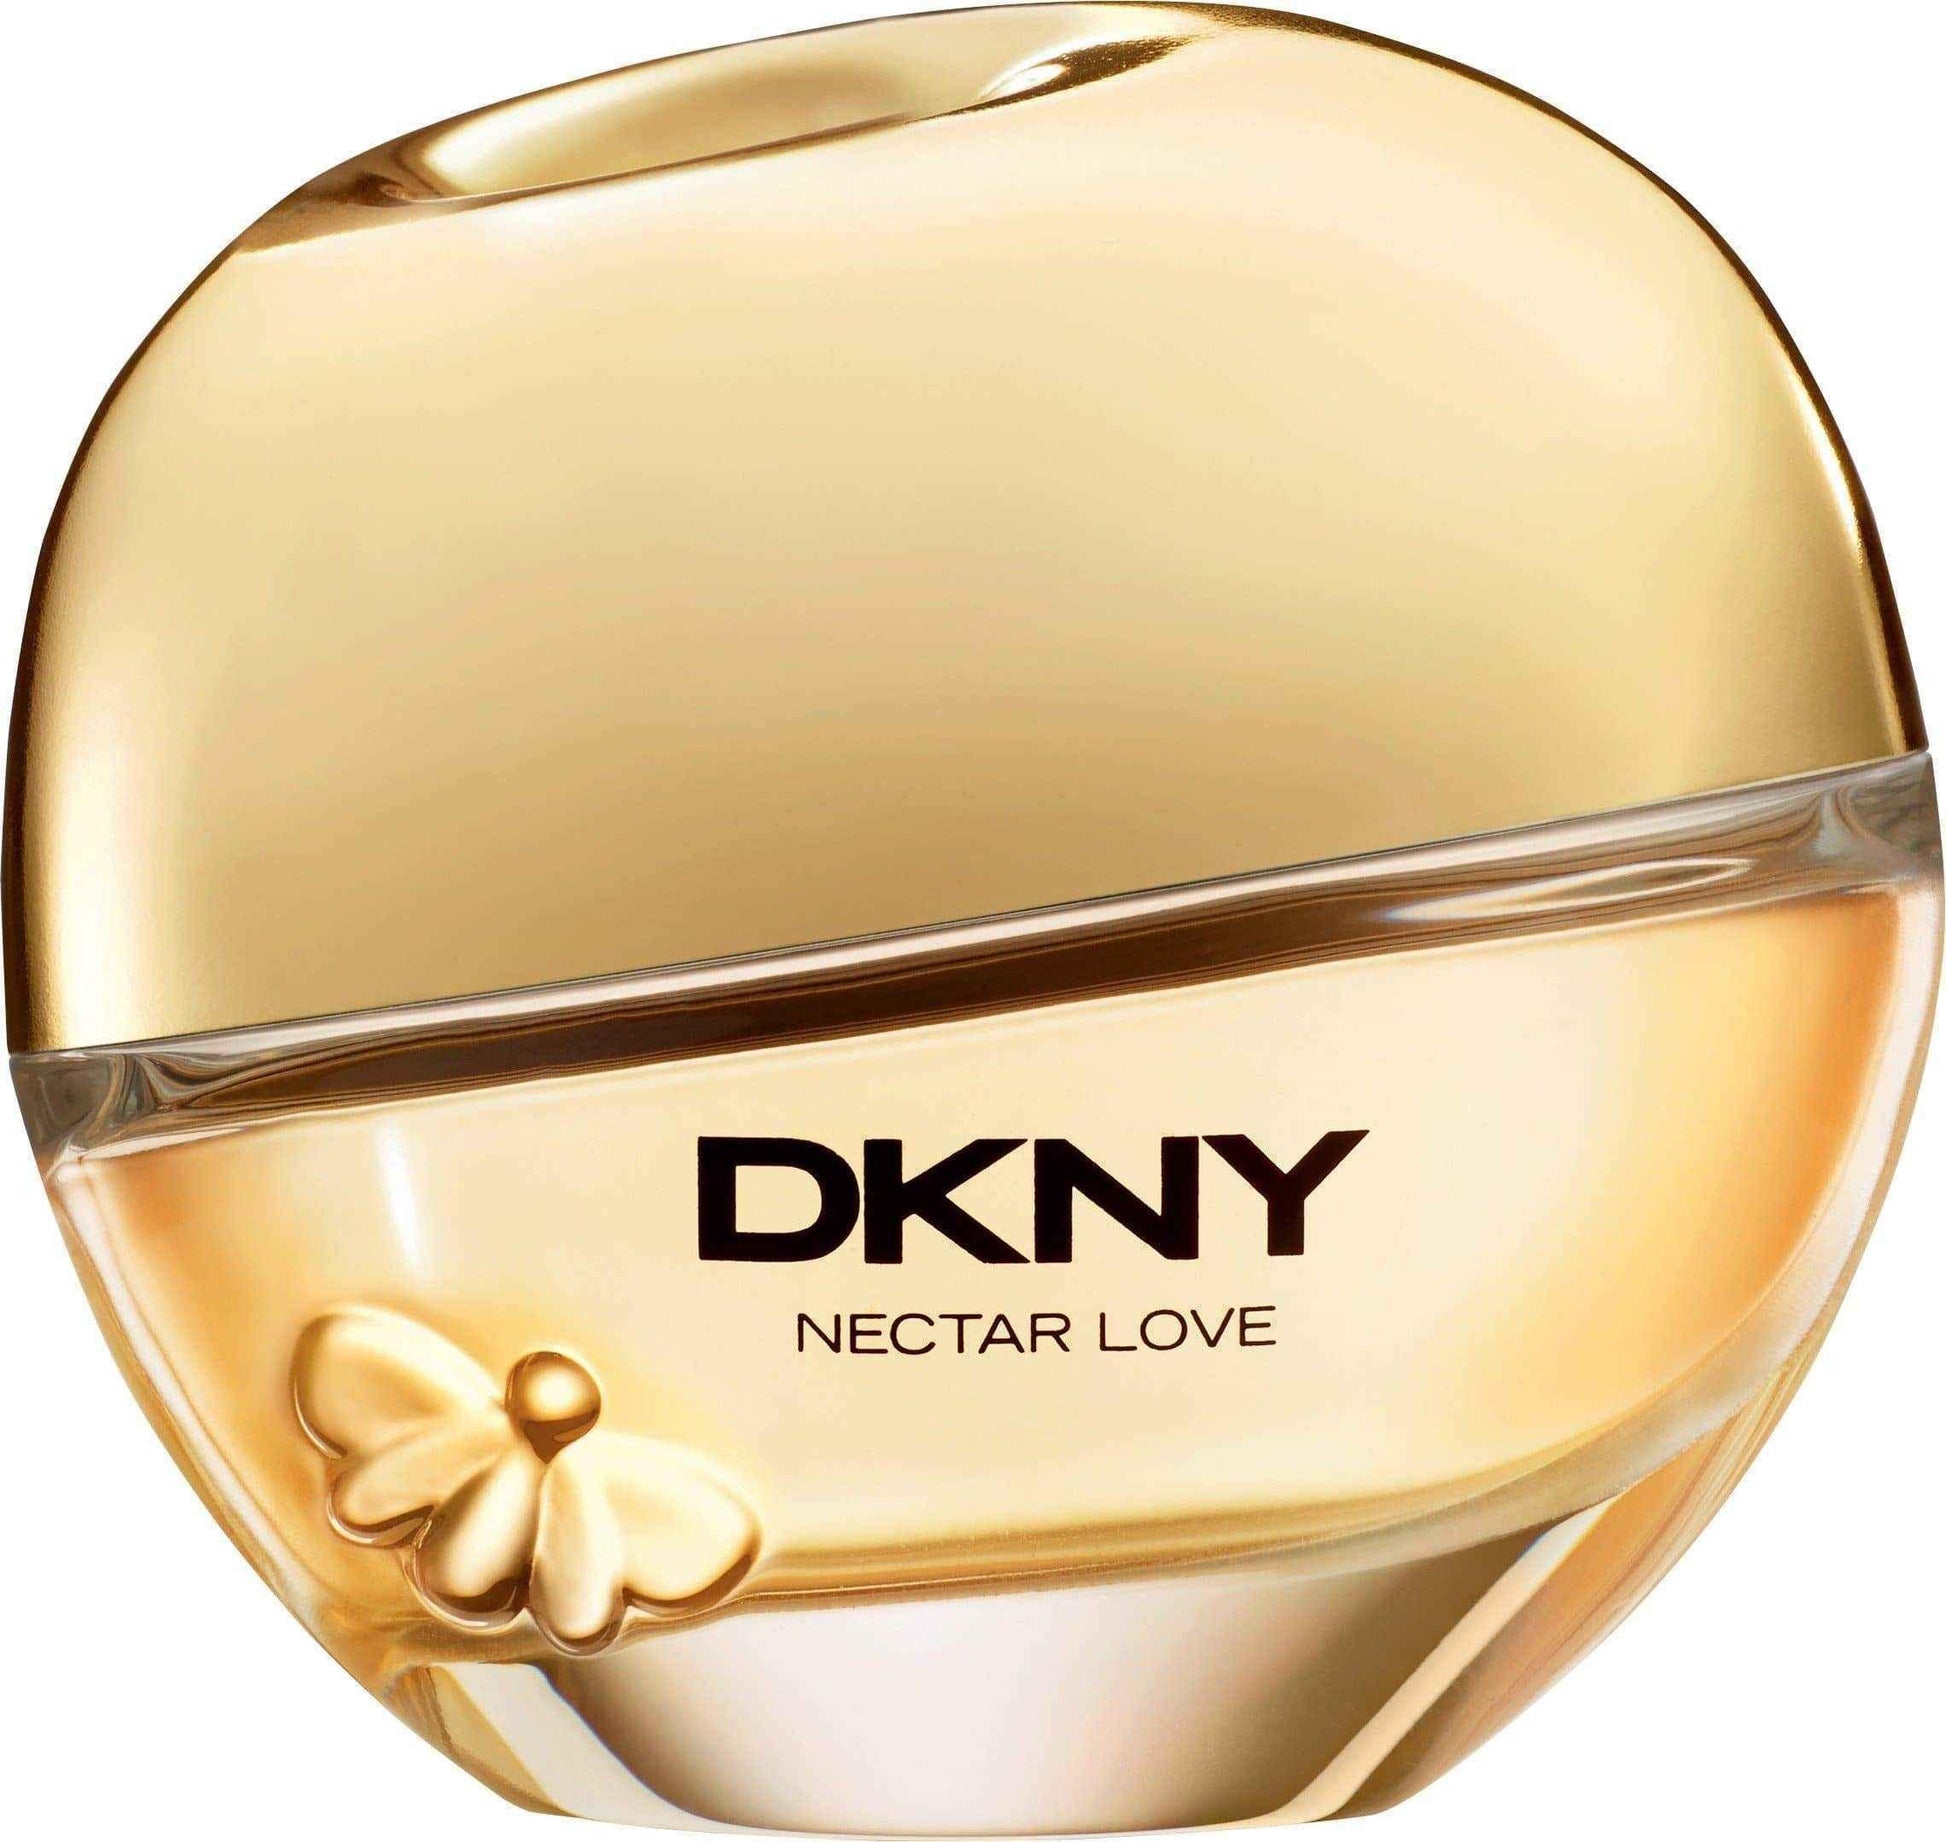 DKNY Nectar Love Eau de Parfum 100ml Spray UK